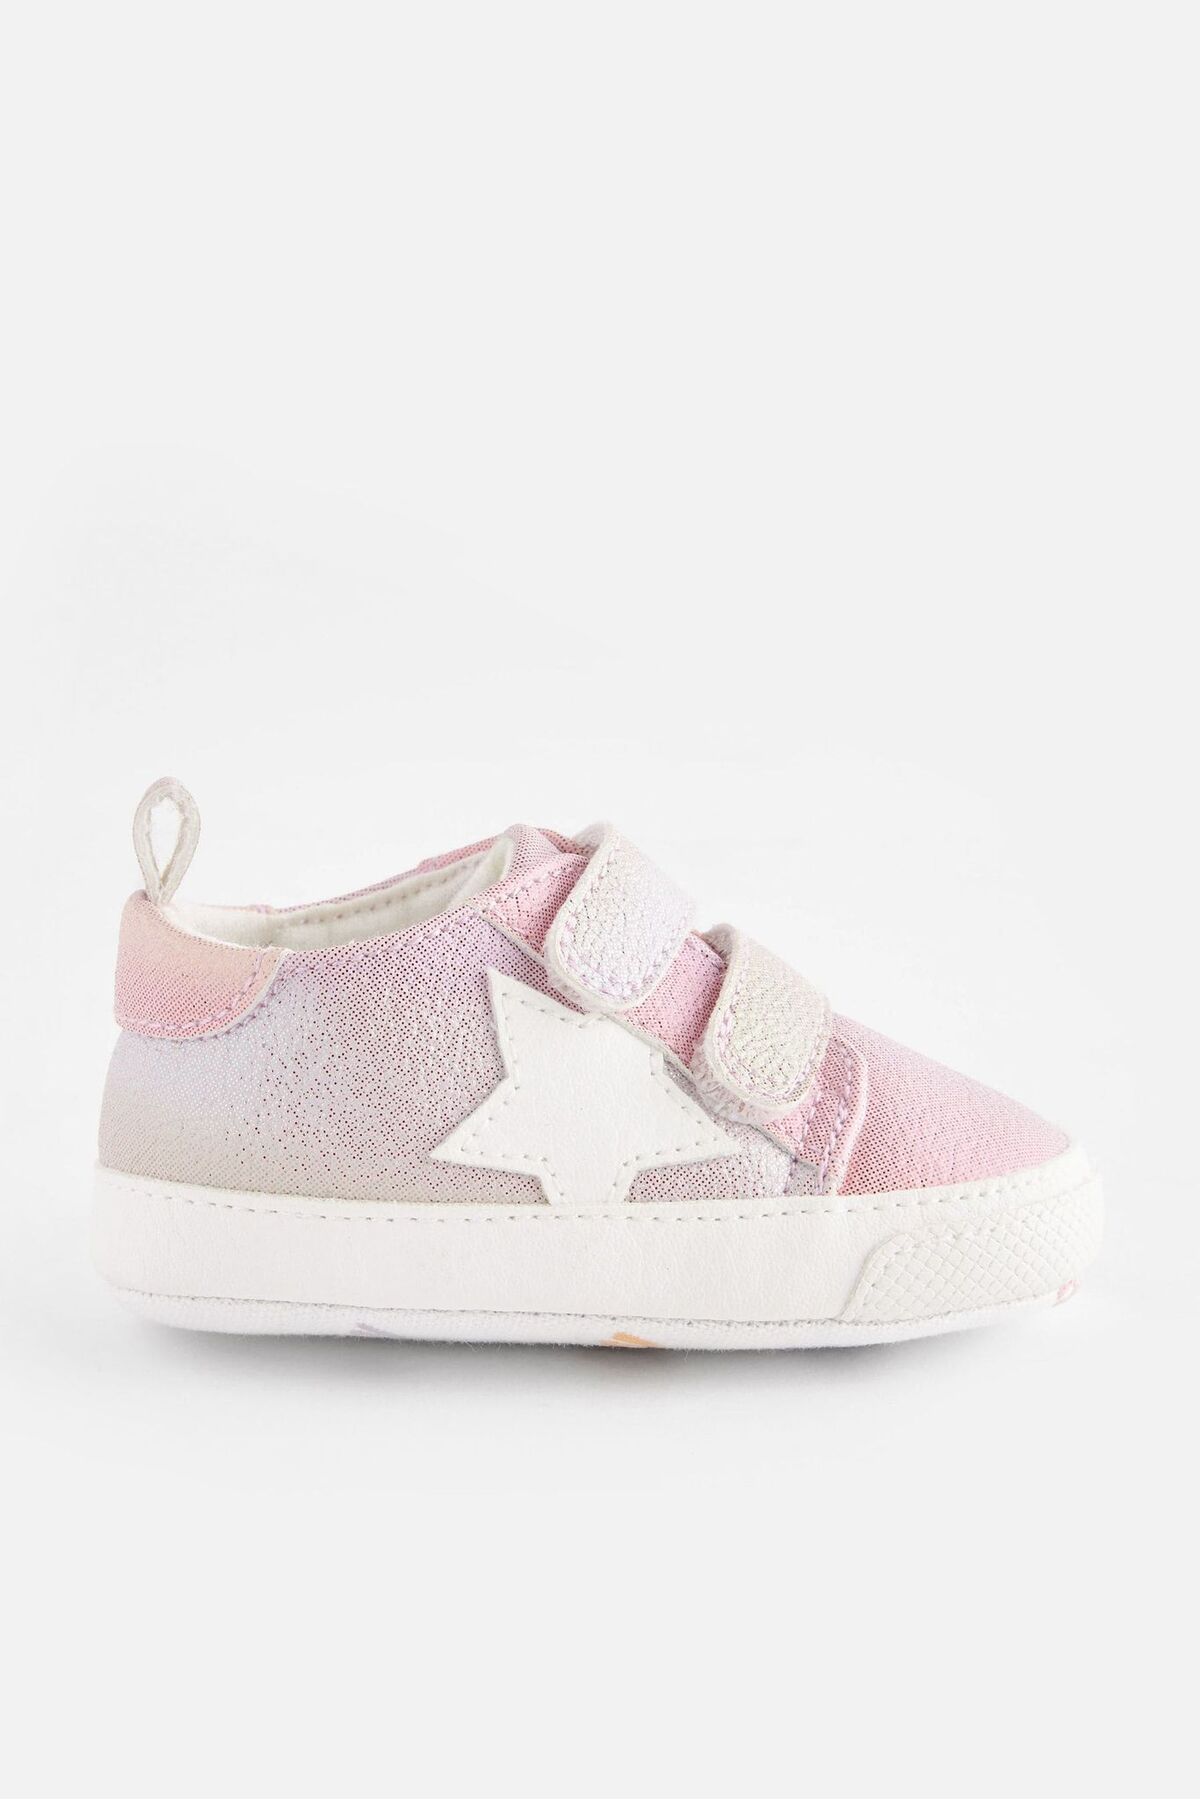 Next Baby Çok Renkli Gökkuşağı Yumuşak Taban Bebek Ev Ayakkabısı